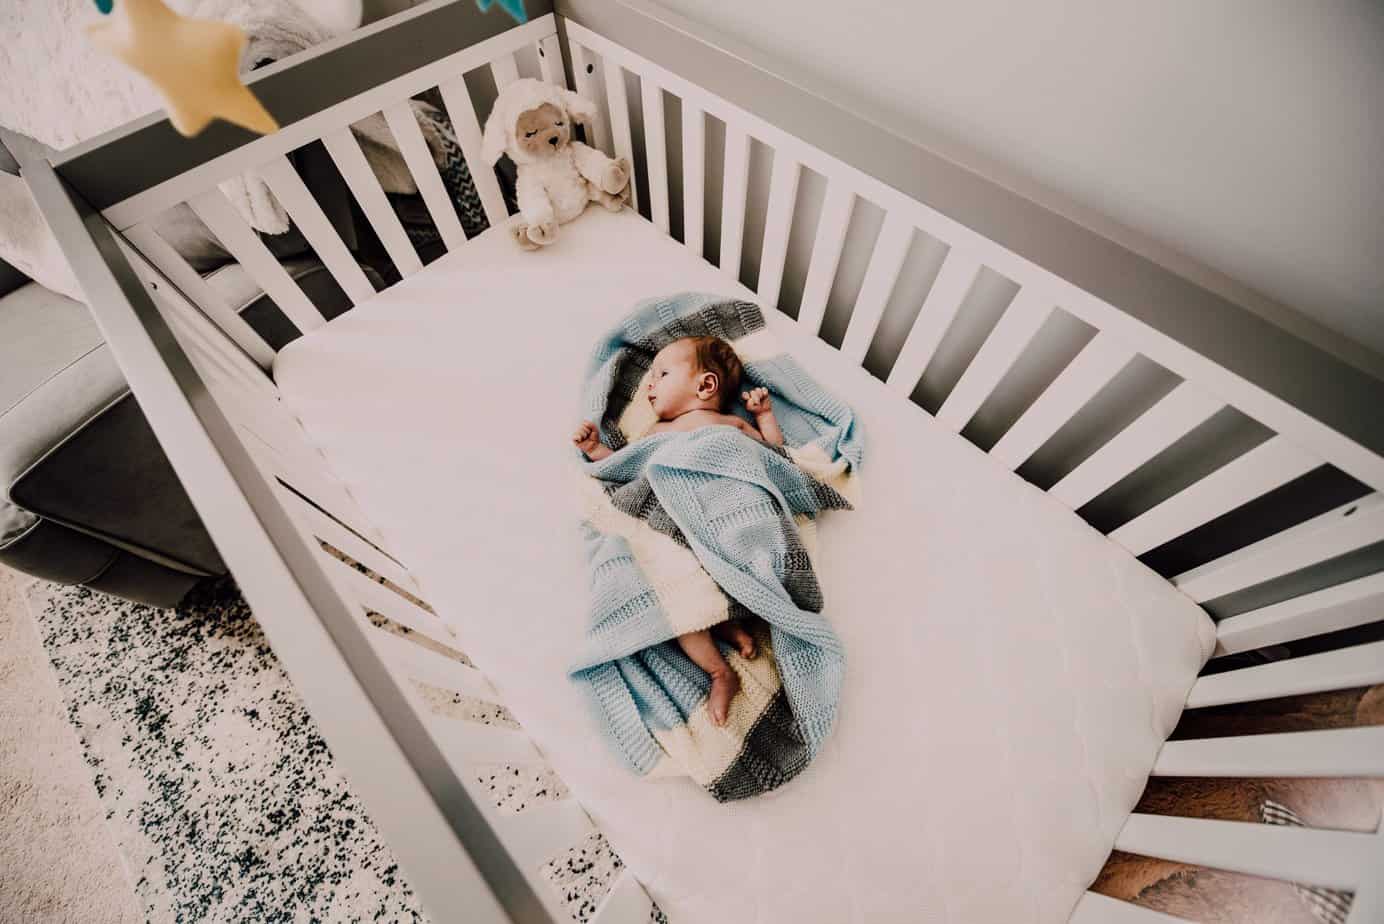 How to teach an infant to sleep in a crib?